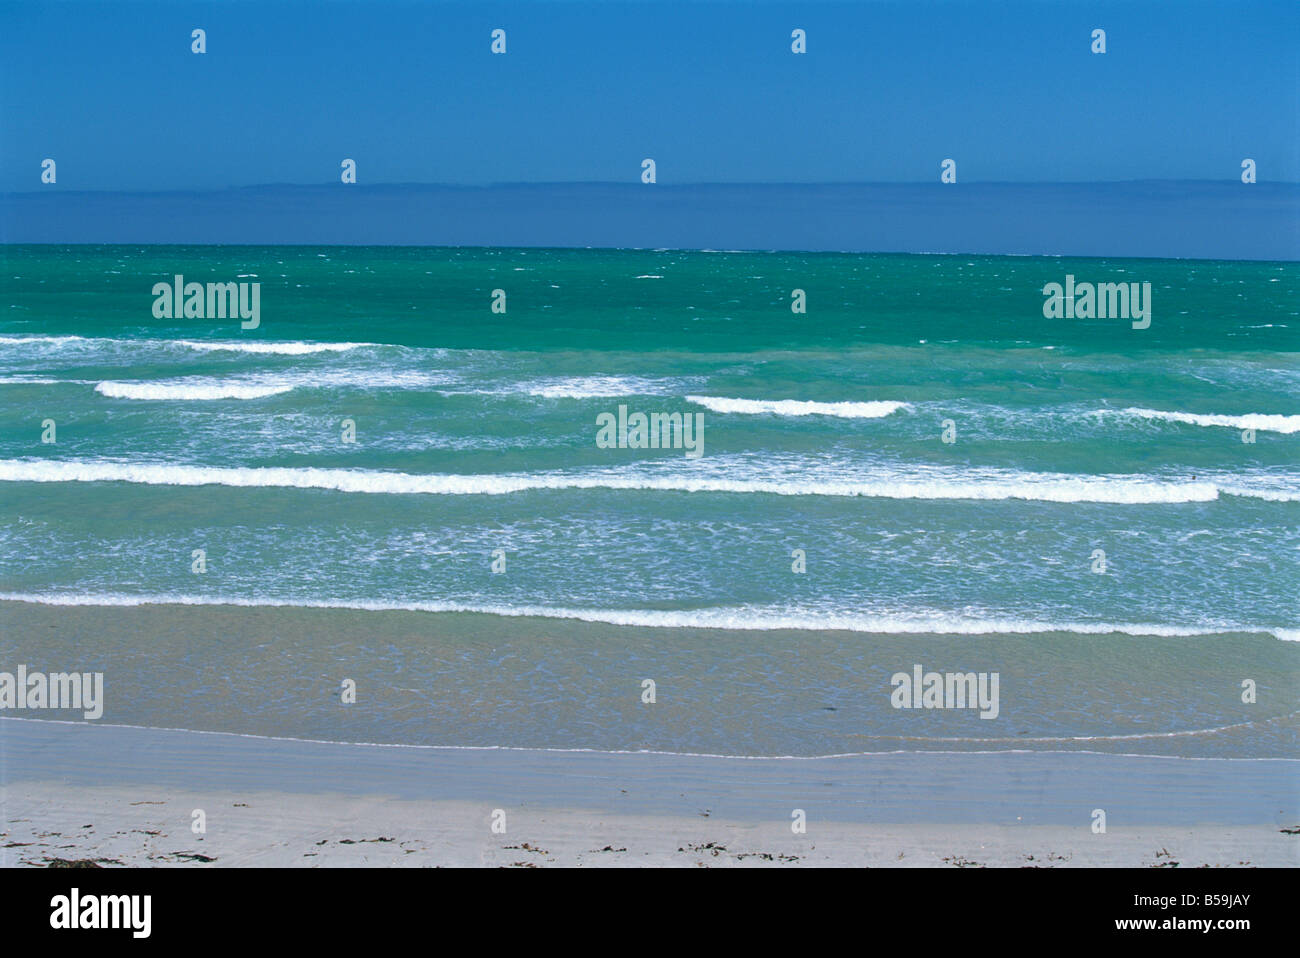 Paysage marin depuis la plage de surf à la station balnéaire paisible de Beachport, dans le sud-est de l'Australie du Sud, Australie, Pacifique Banque D'Images